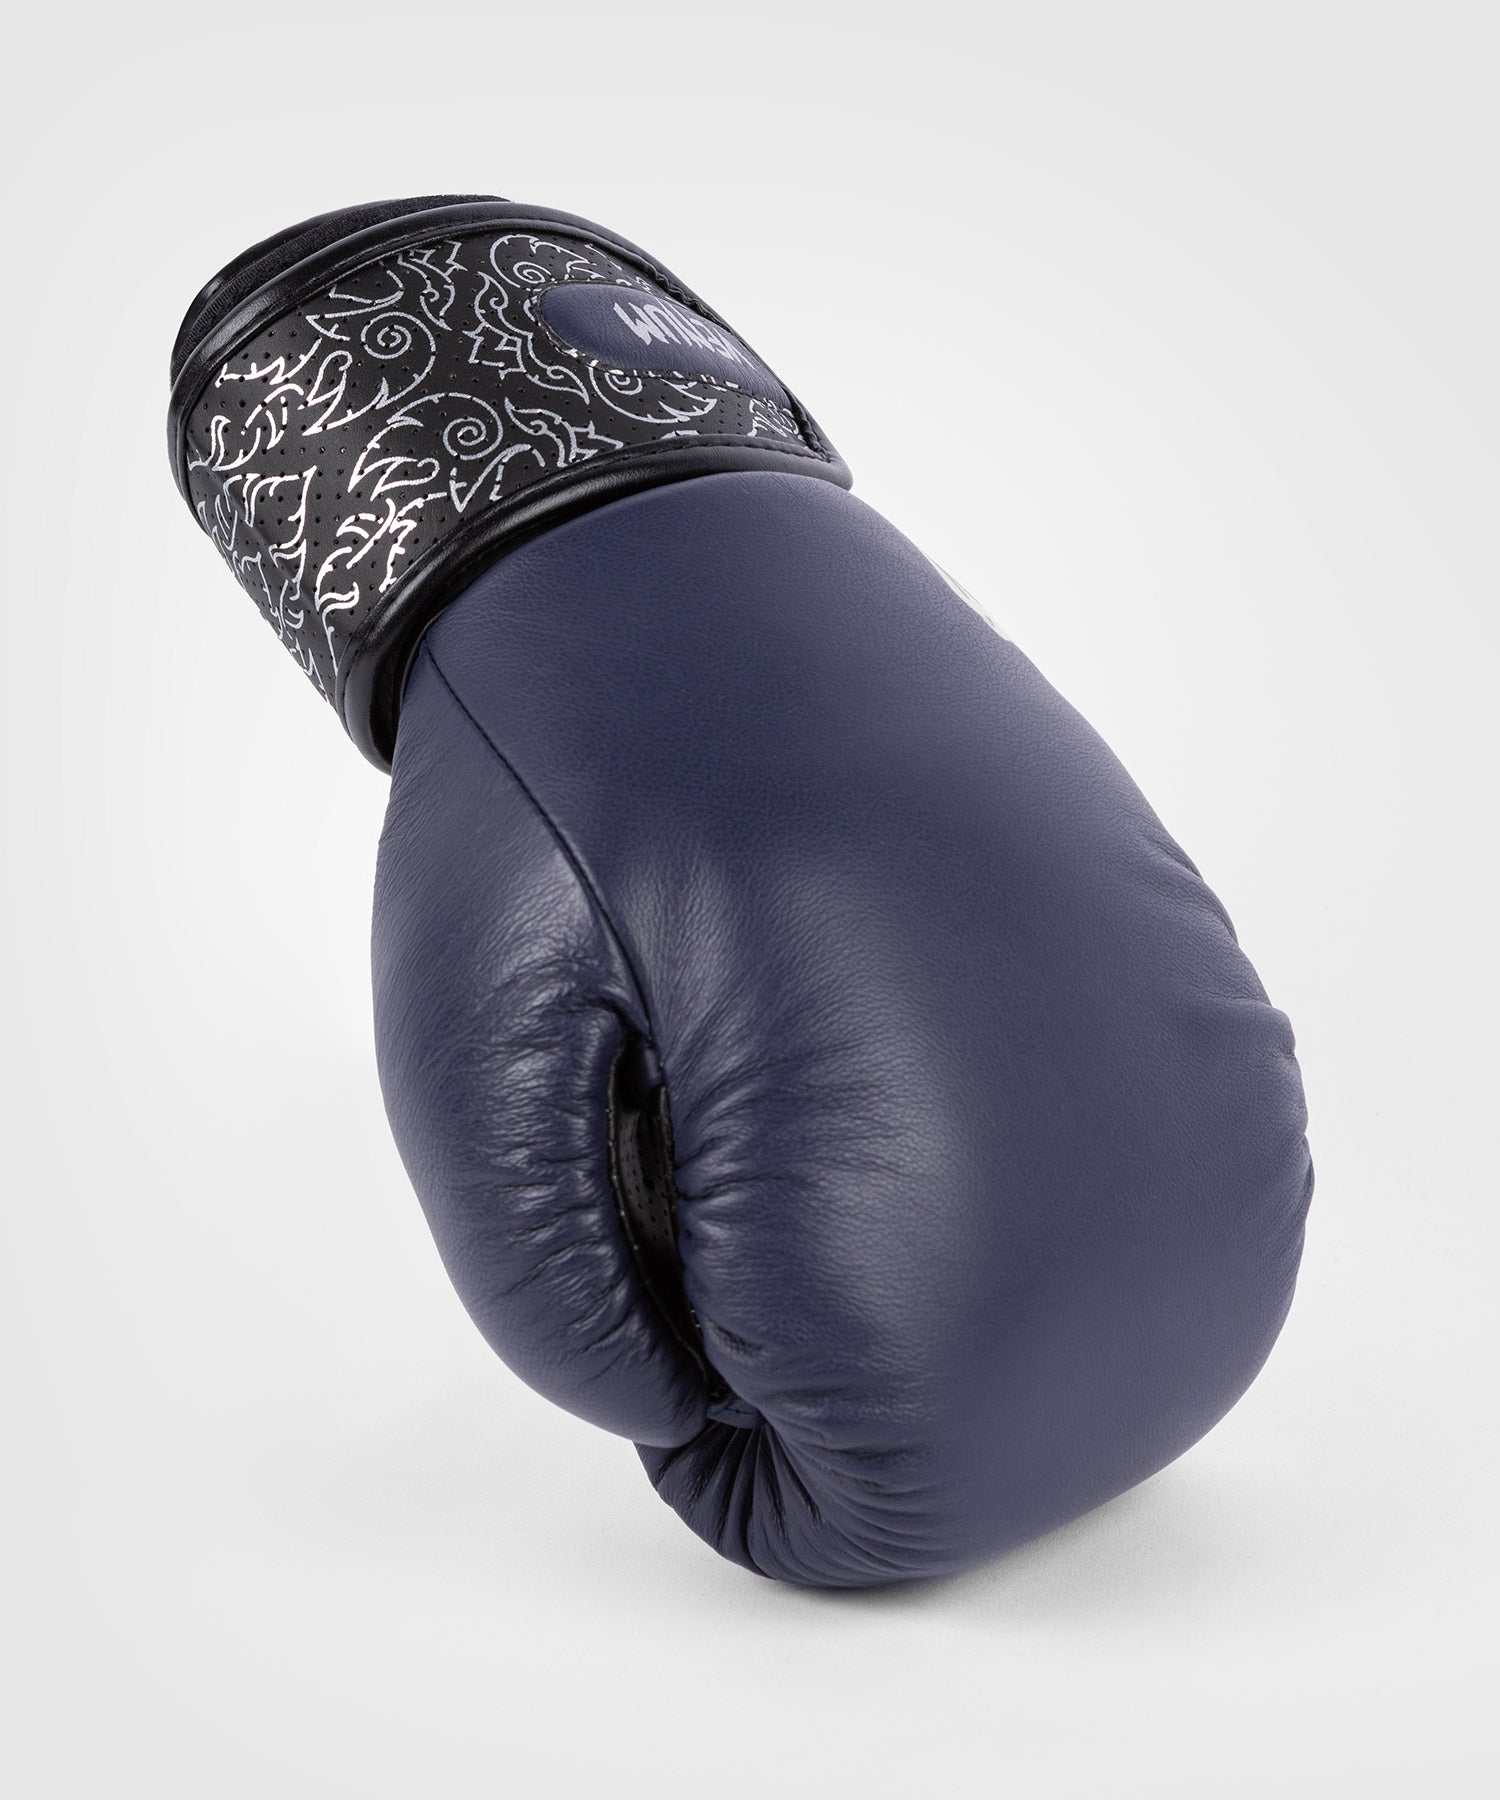 Boksehandsker - Venum - Rajadamnern X Venum Boxing Gloves - Marine Blå